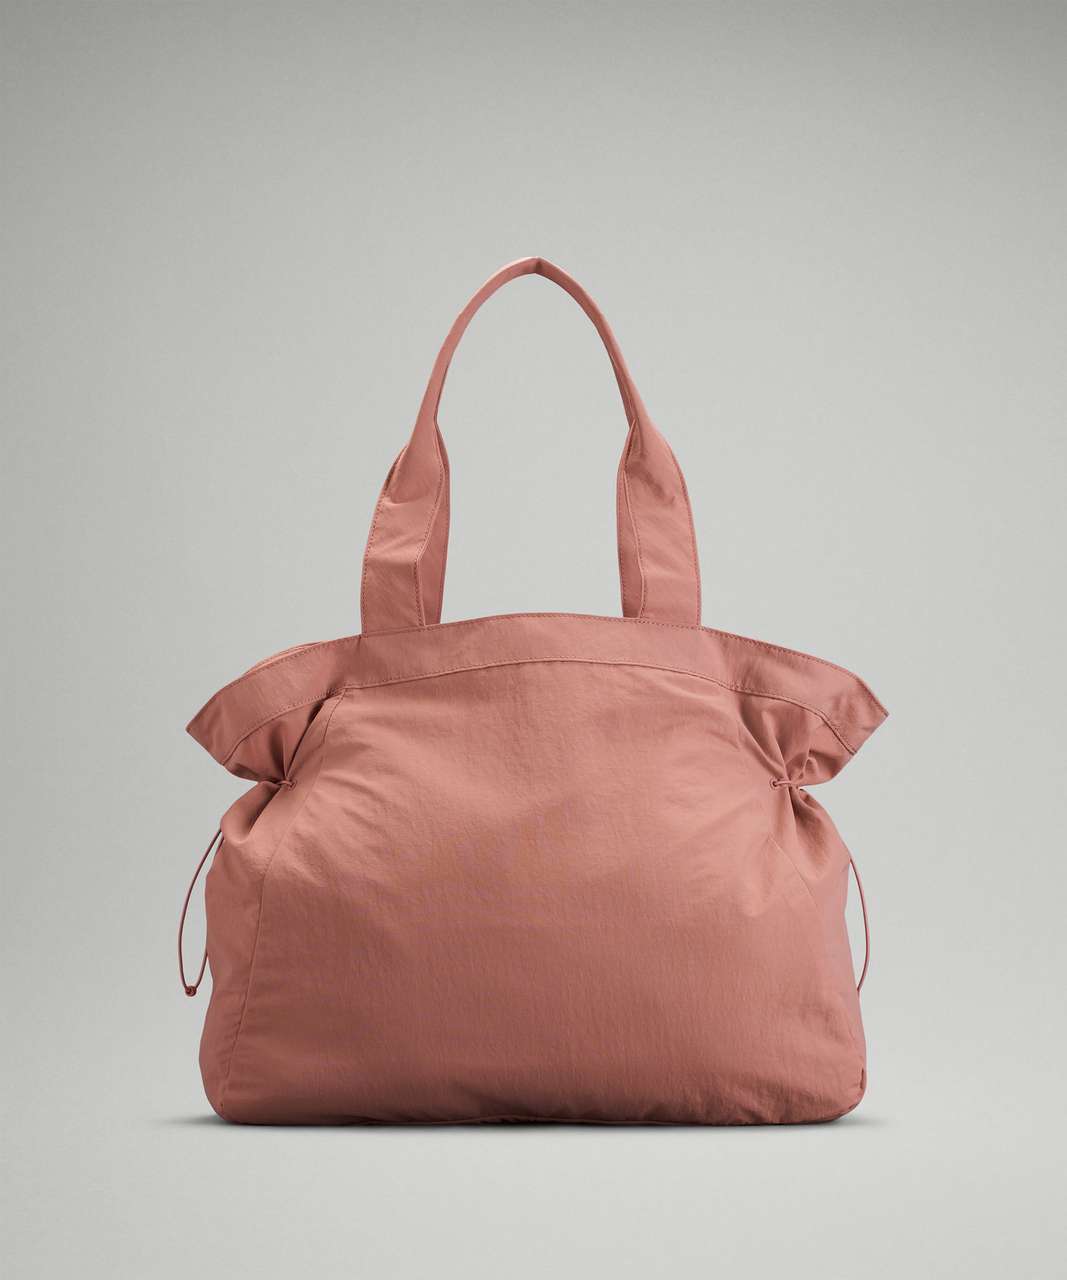 Lululemon Side-Cinch Shopper Bag 18L - Pink Pastel